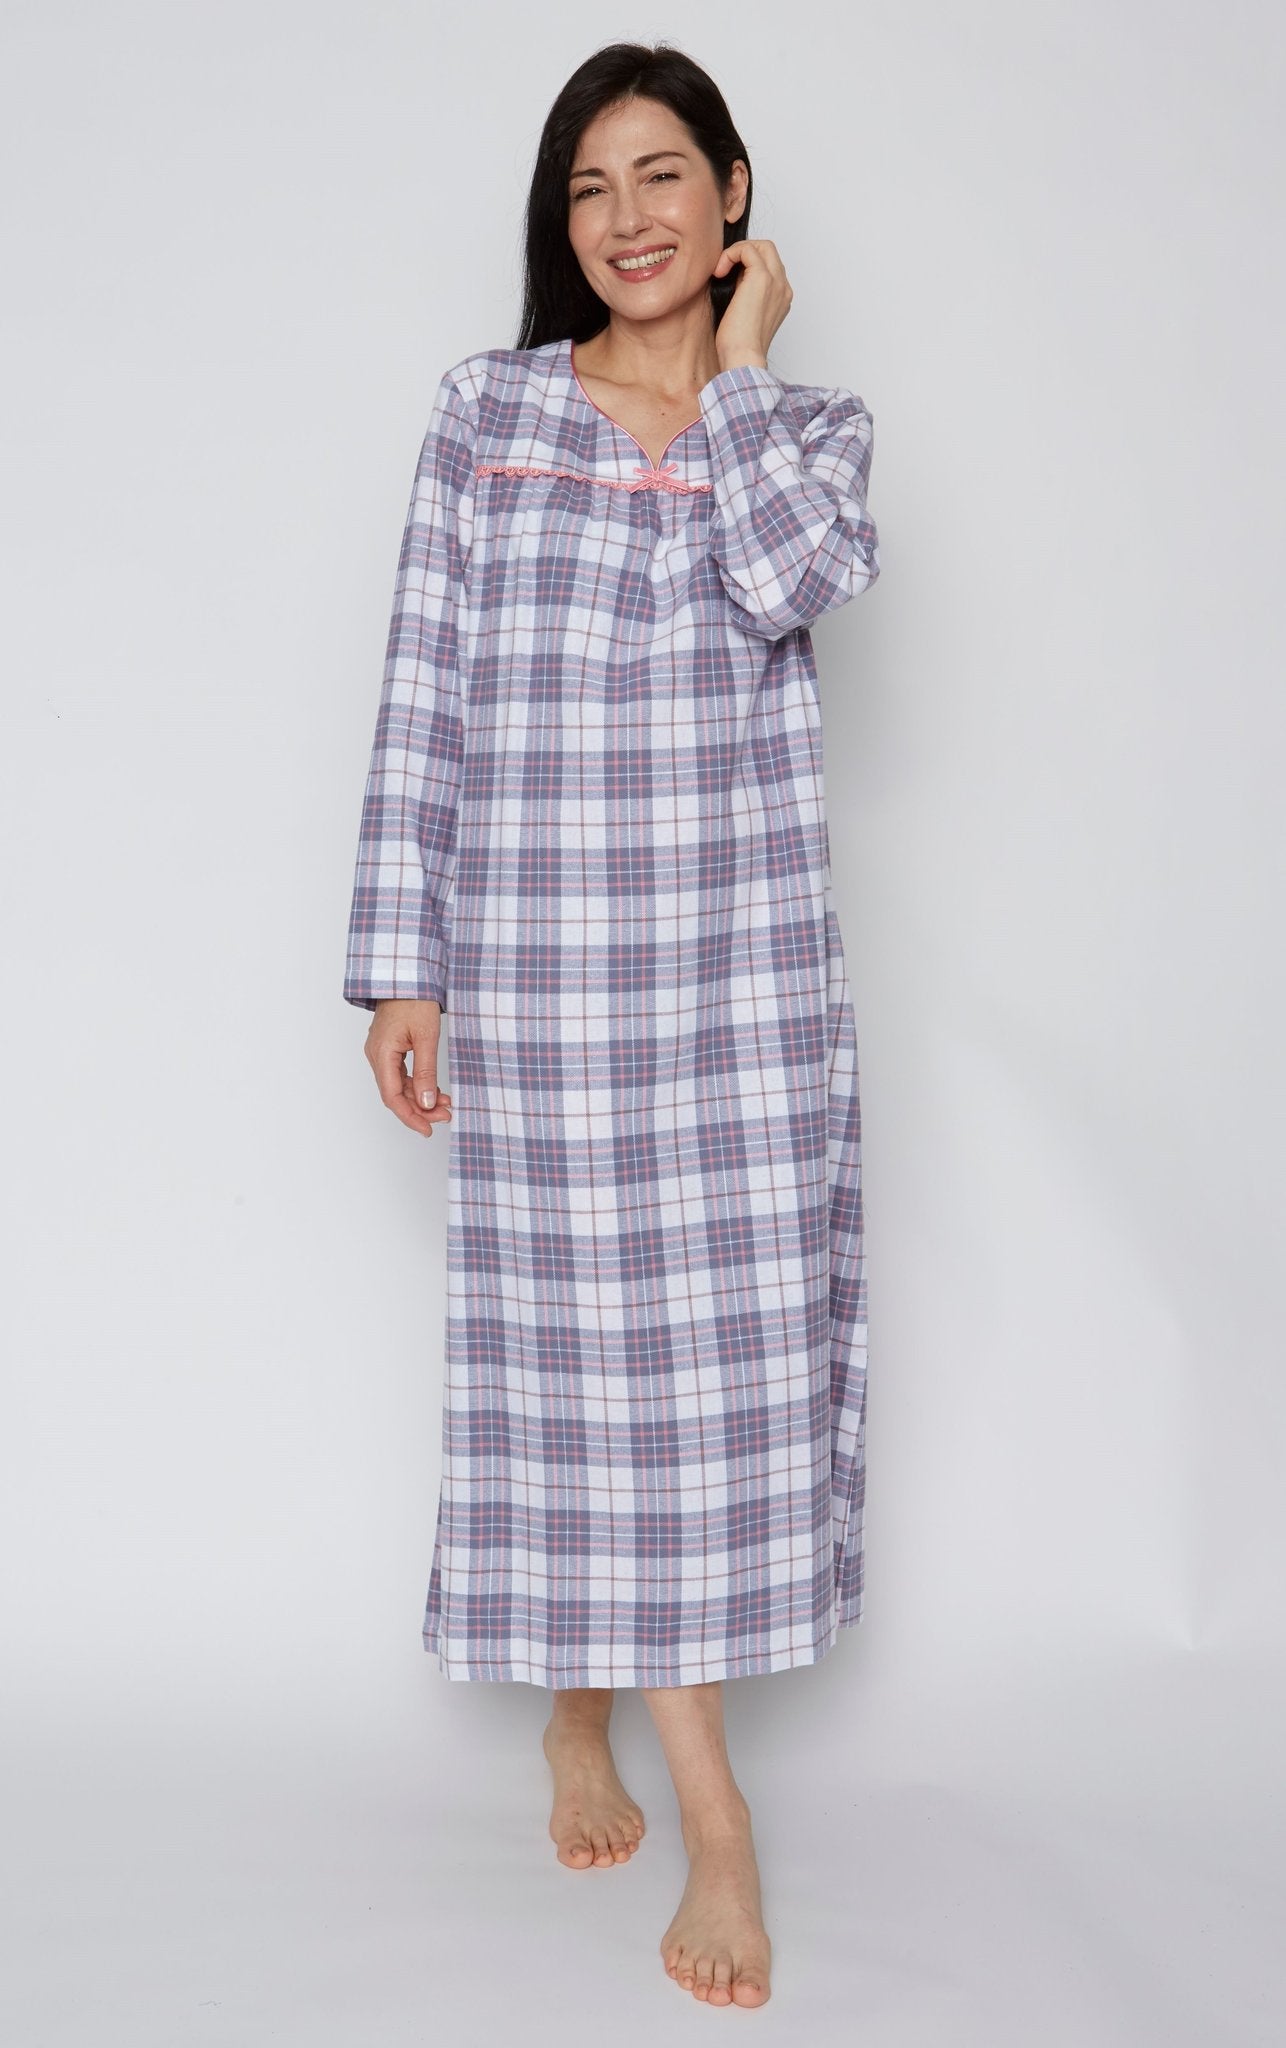 1 Pc Women Night Gowns Sleepwear Nightwear Long Sleeping Dress Luxury  Nightgown | eBay